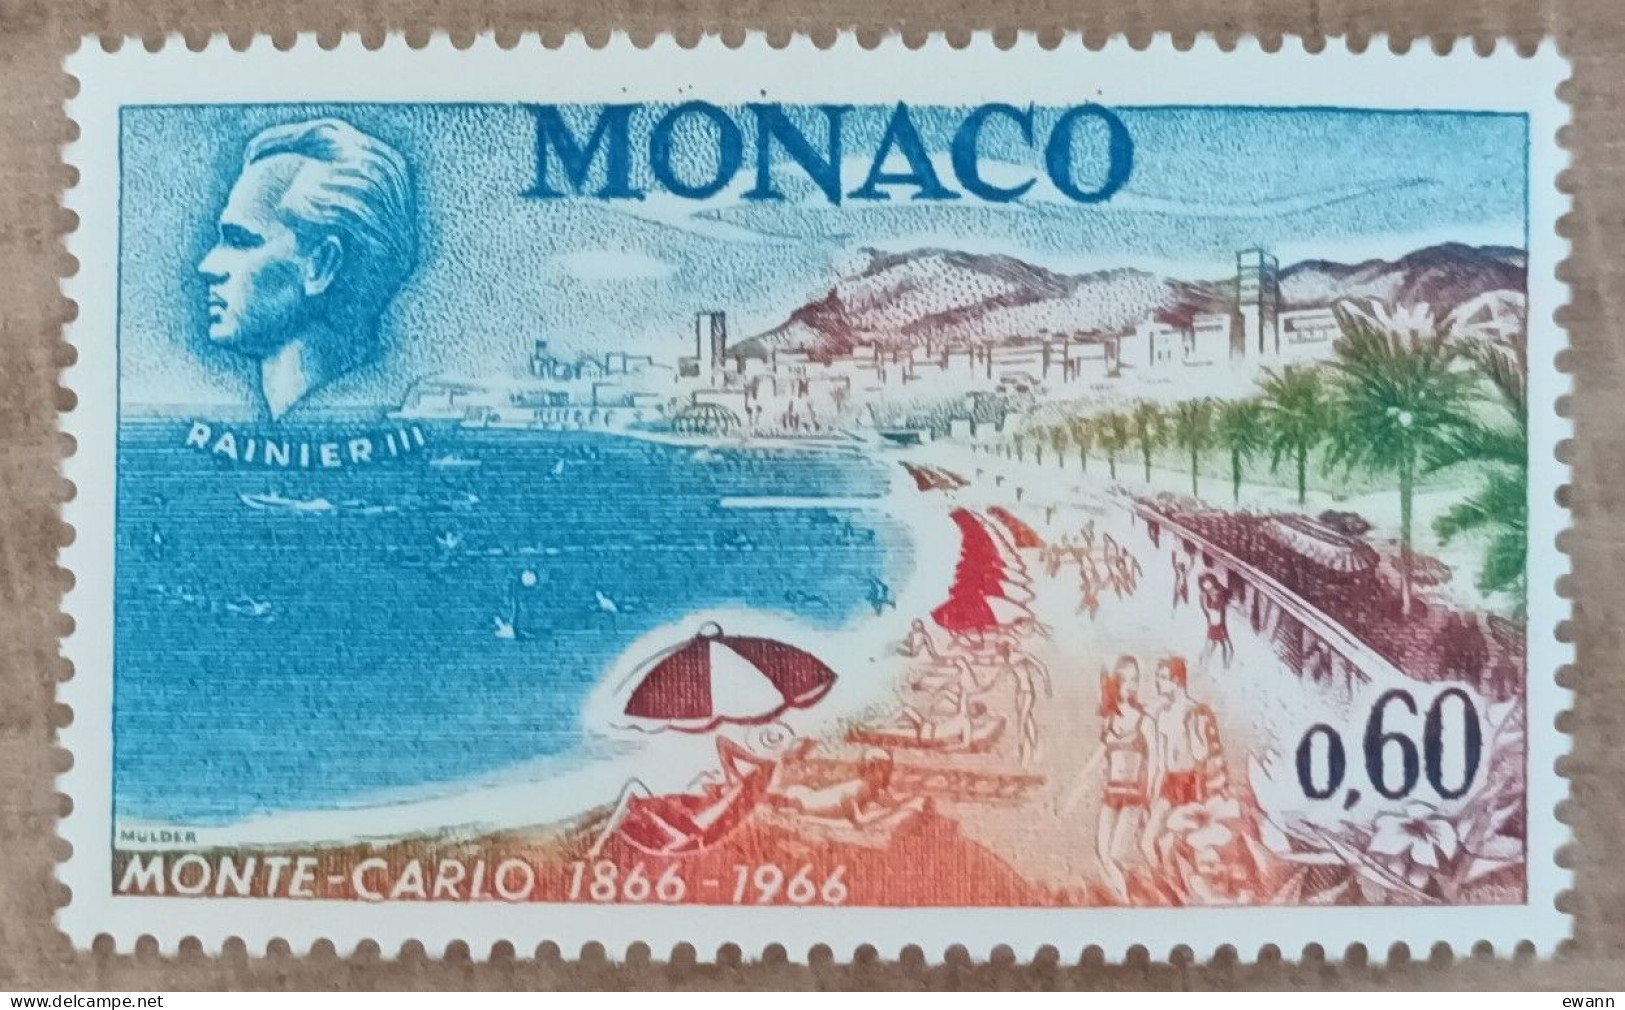 Monaco - YT N°694 - Centenaire De Monte Carlo - 1966 - Neuf - Neufs